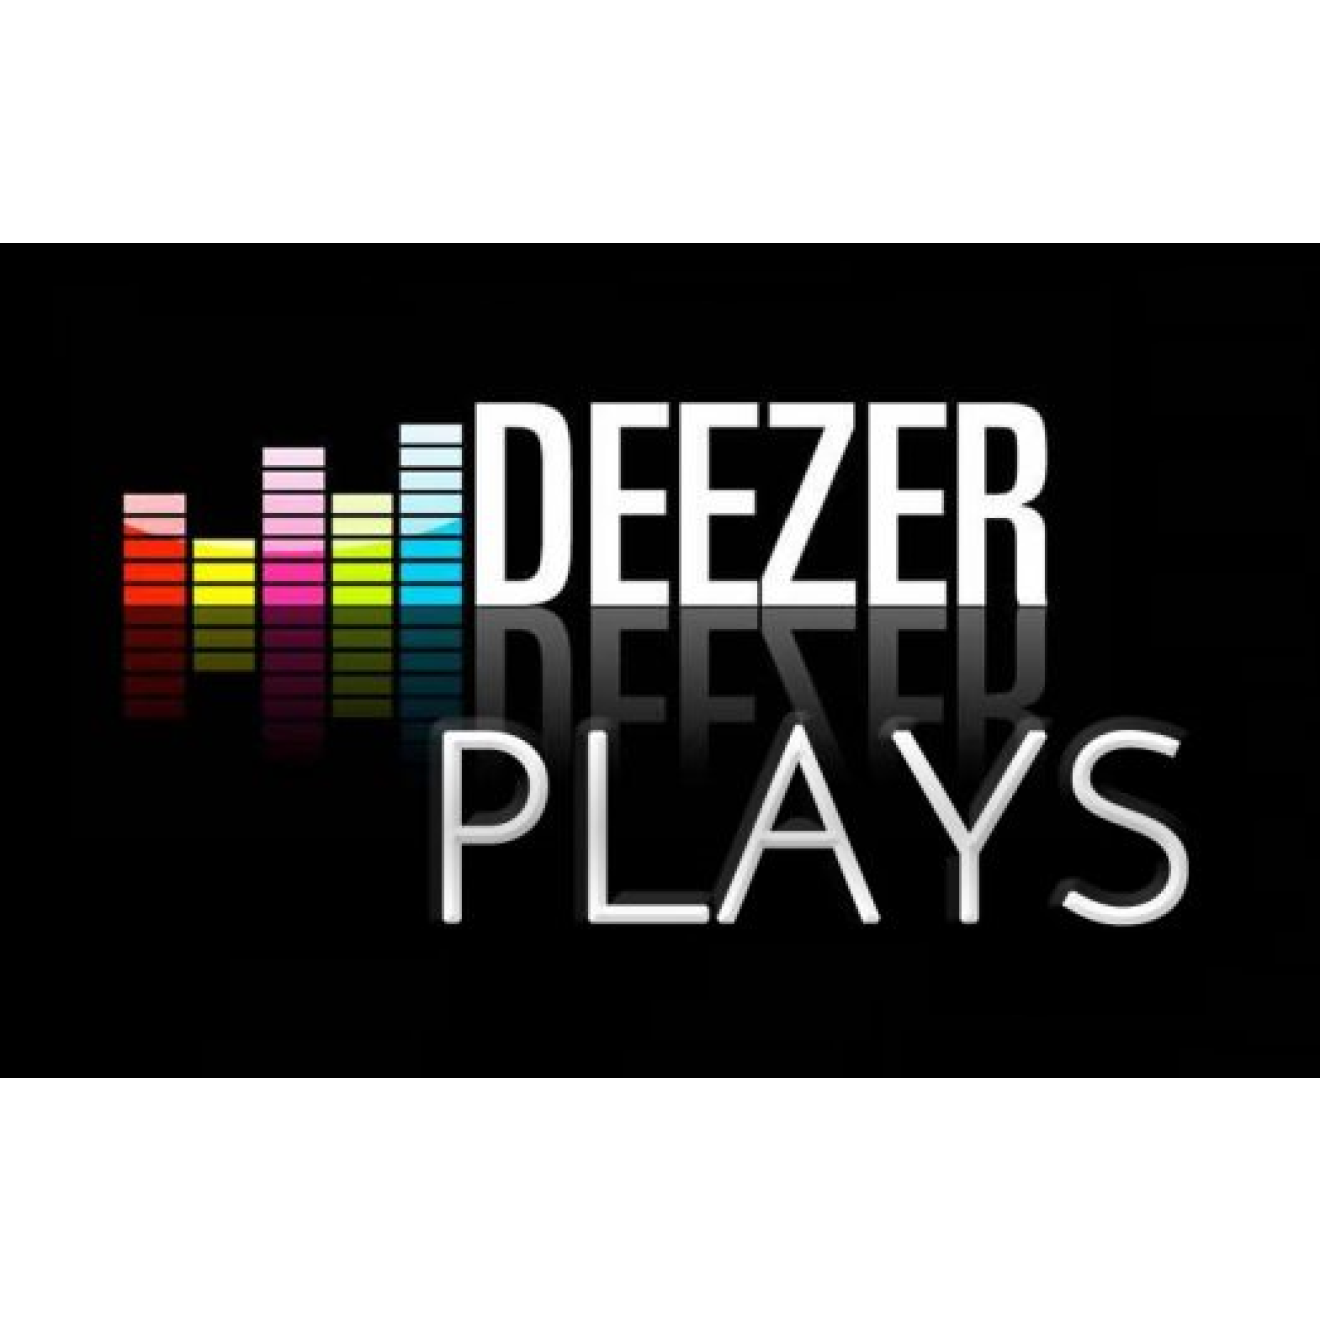 750 Deezer Plays / Abspielen für Dich